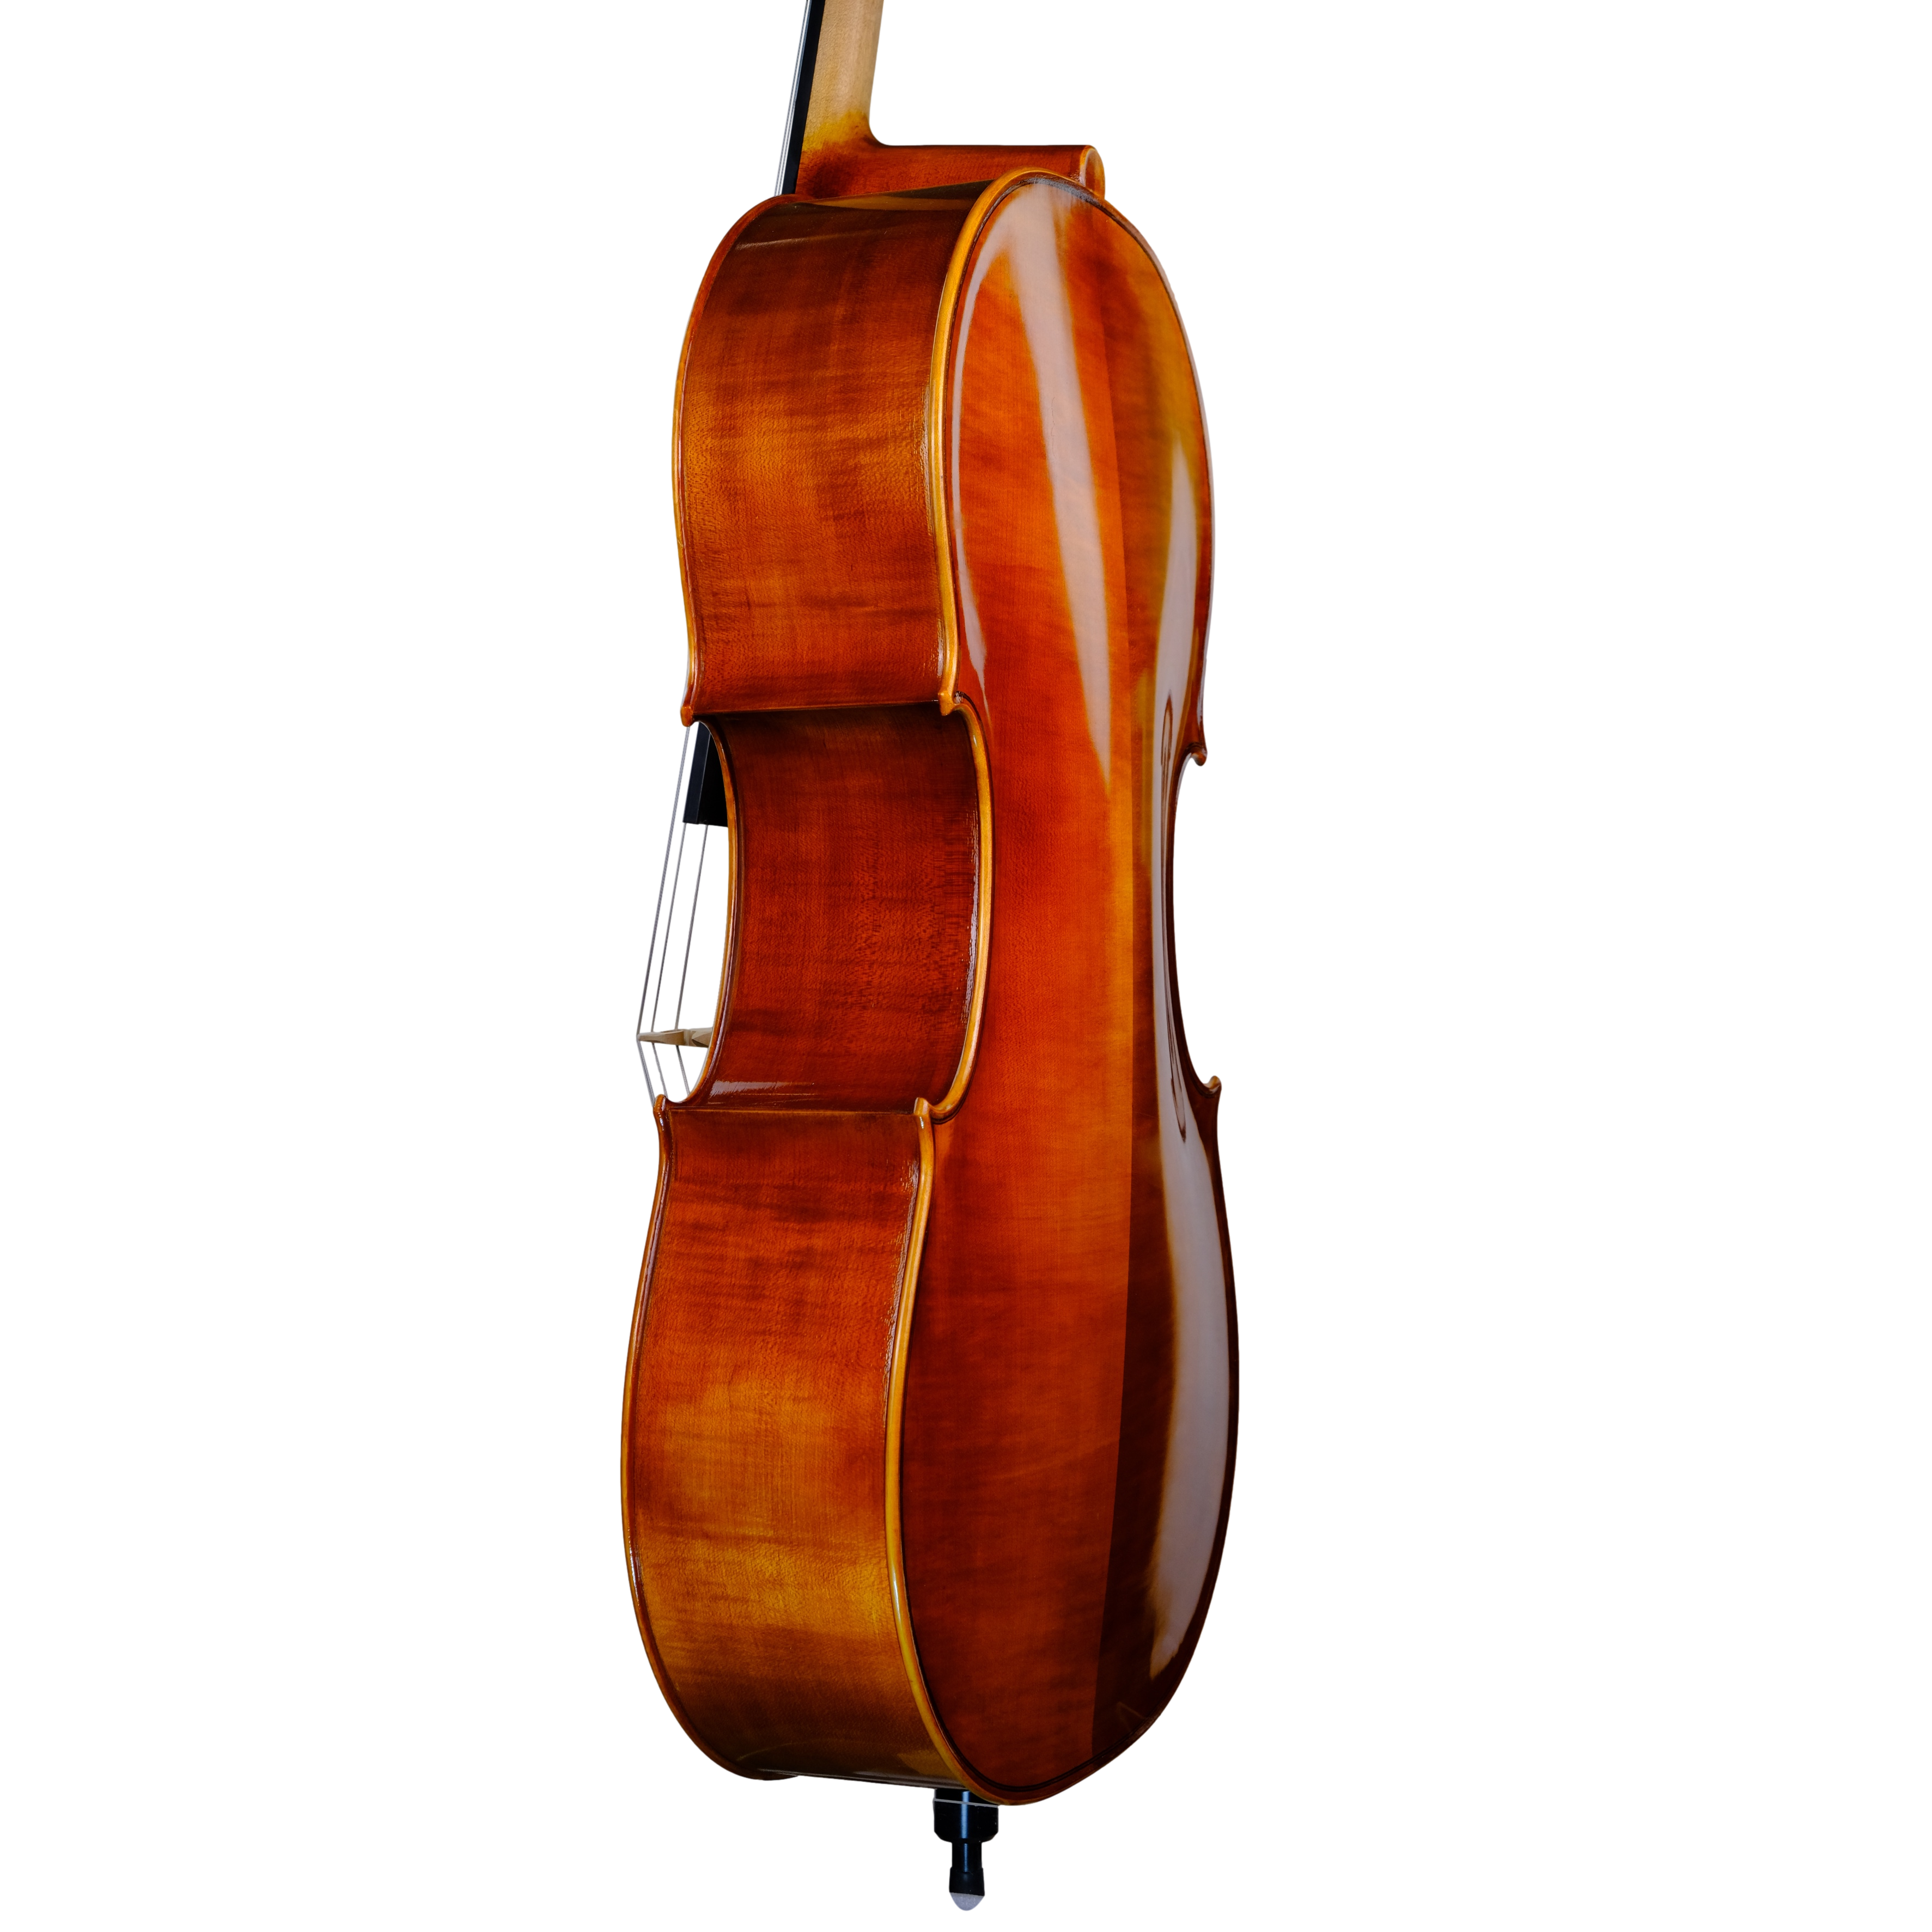 Cello - Scala Perfetta 7/8, Stradivari, Cremona 2023